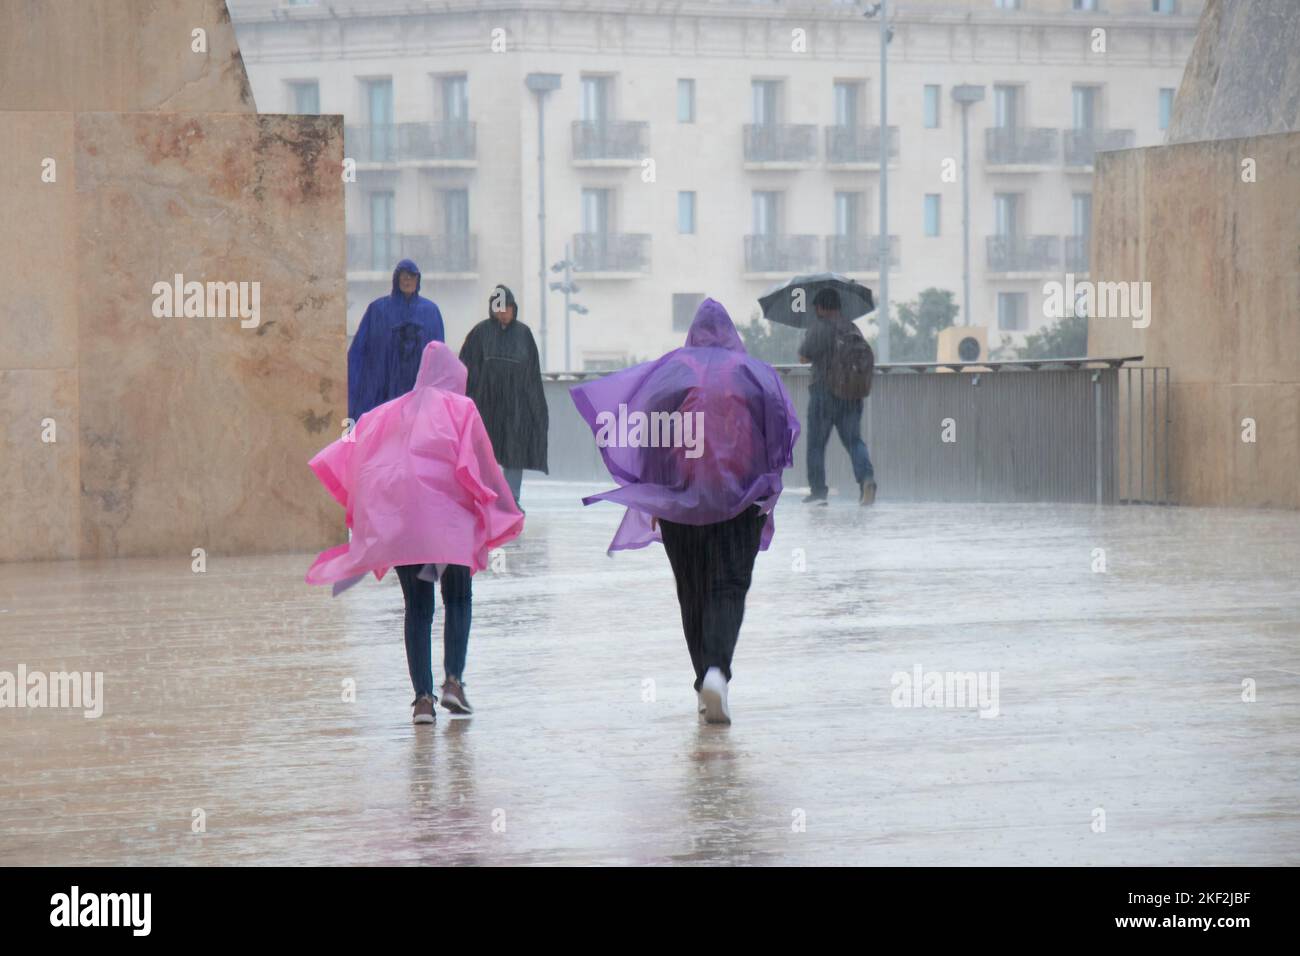 Valletta, Malta - 12. November 2022: Menschen, die Regenponchos und Regenschirme tragen, wandern an einem regnerischen Tag Stockfoto